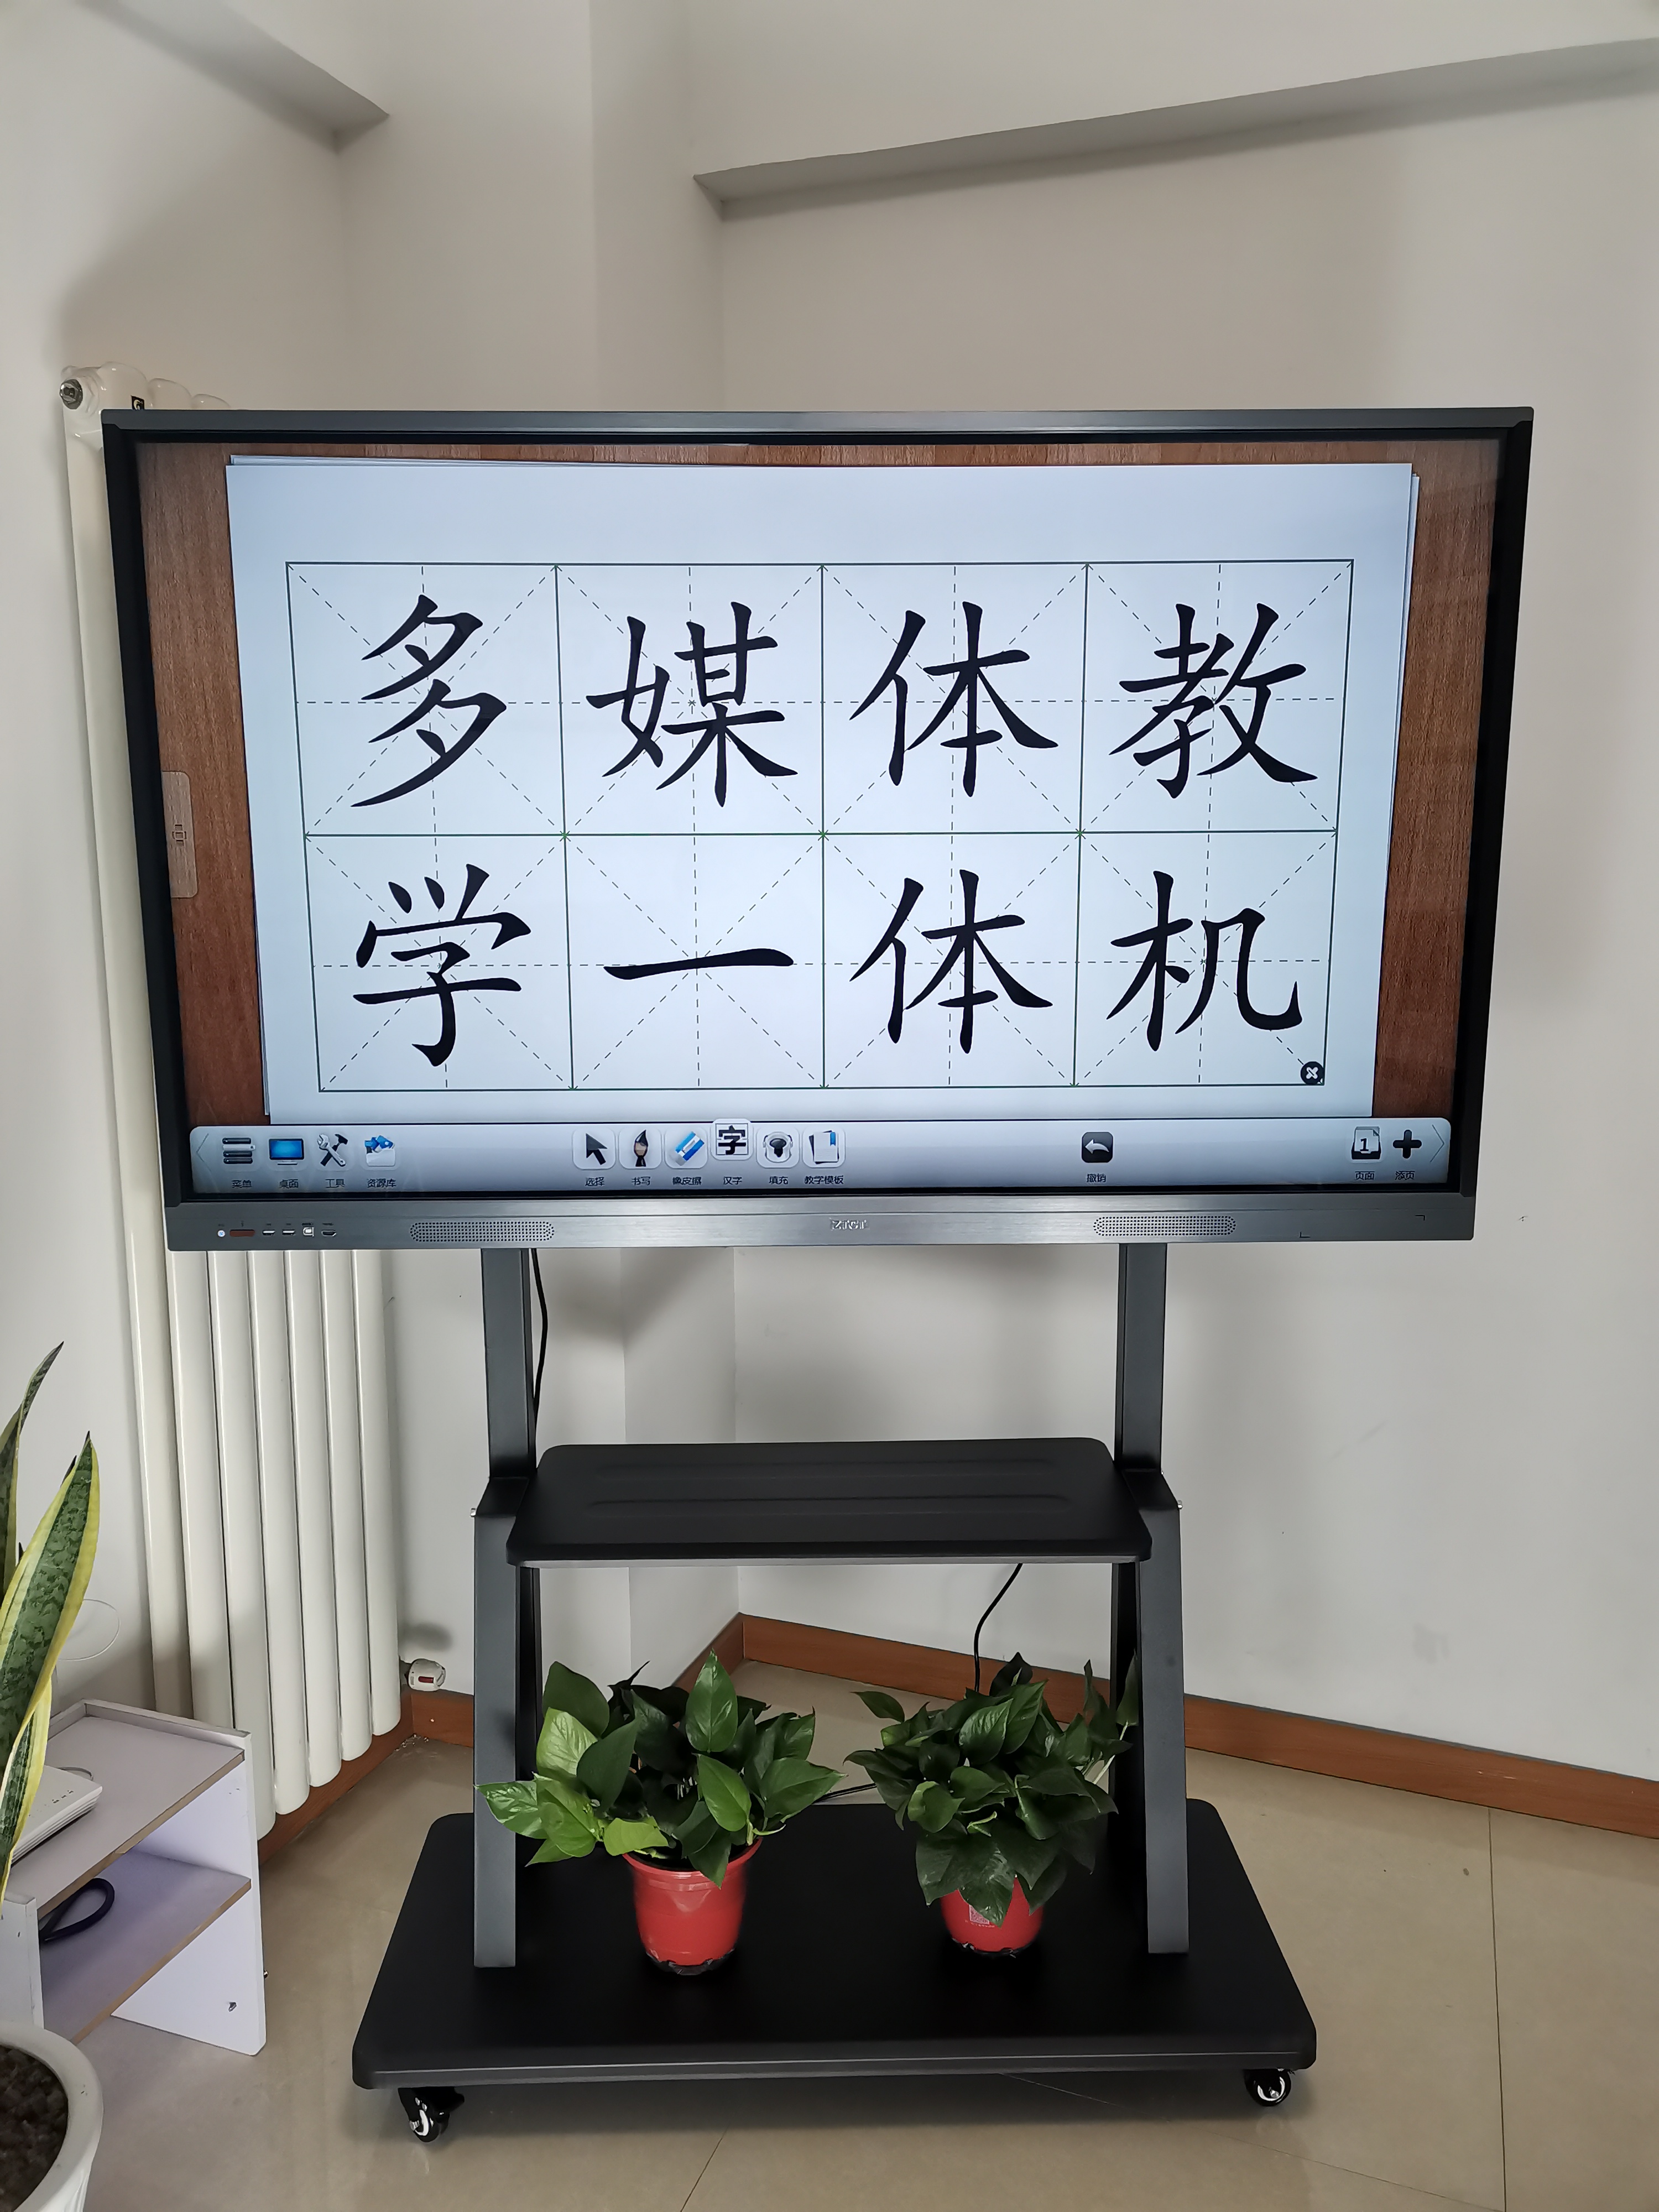 触控教学会议平板郑州中天科技ZHCTC65寸高清触控教学会议平板一体机现货供应